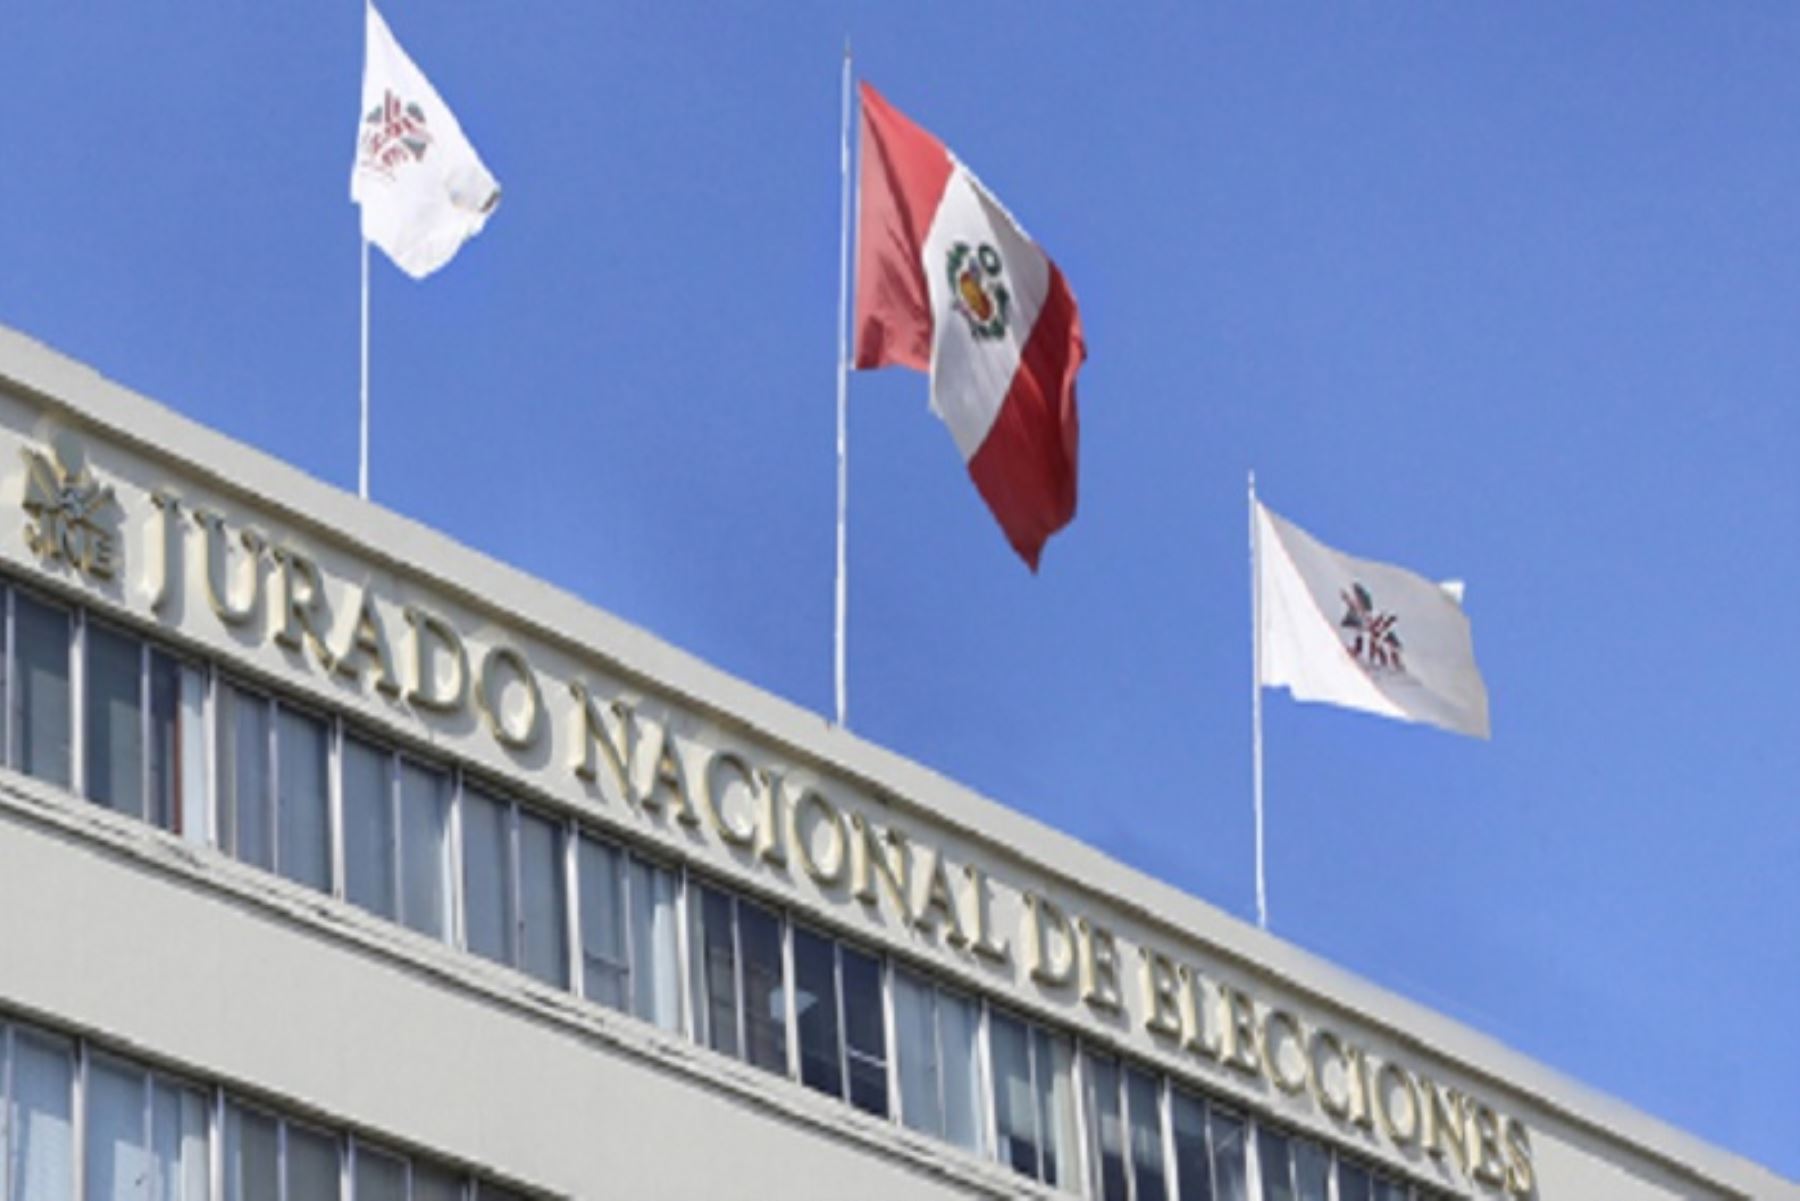 San Martín: JNE inaugura oficina desconcentrada en Tarapoto para optimizar sus servicios